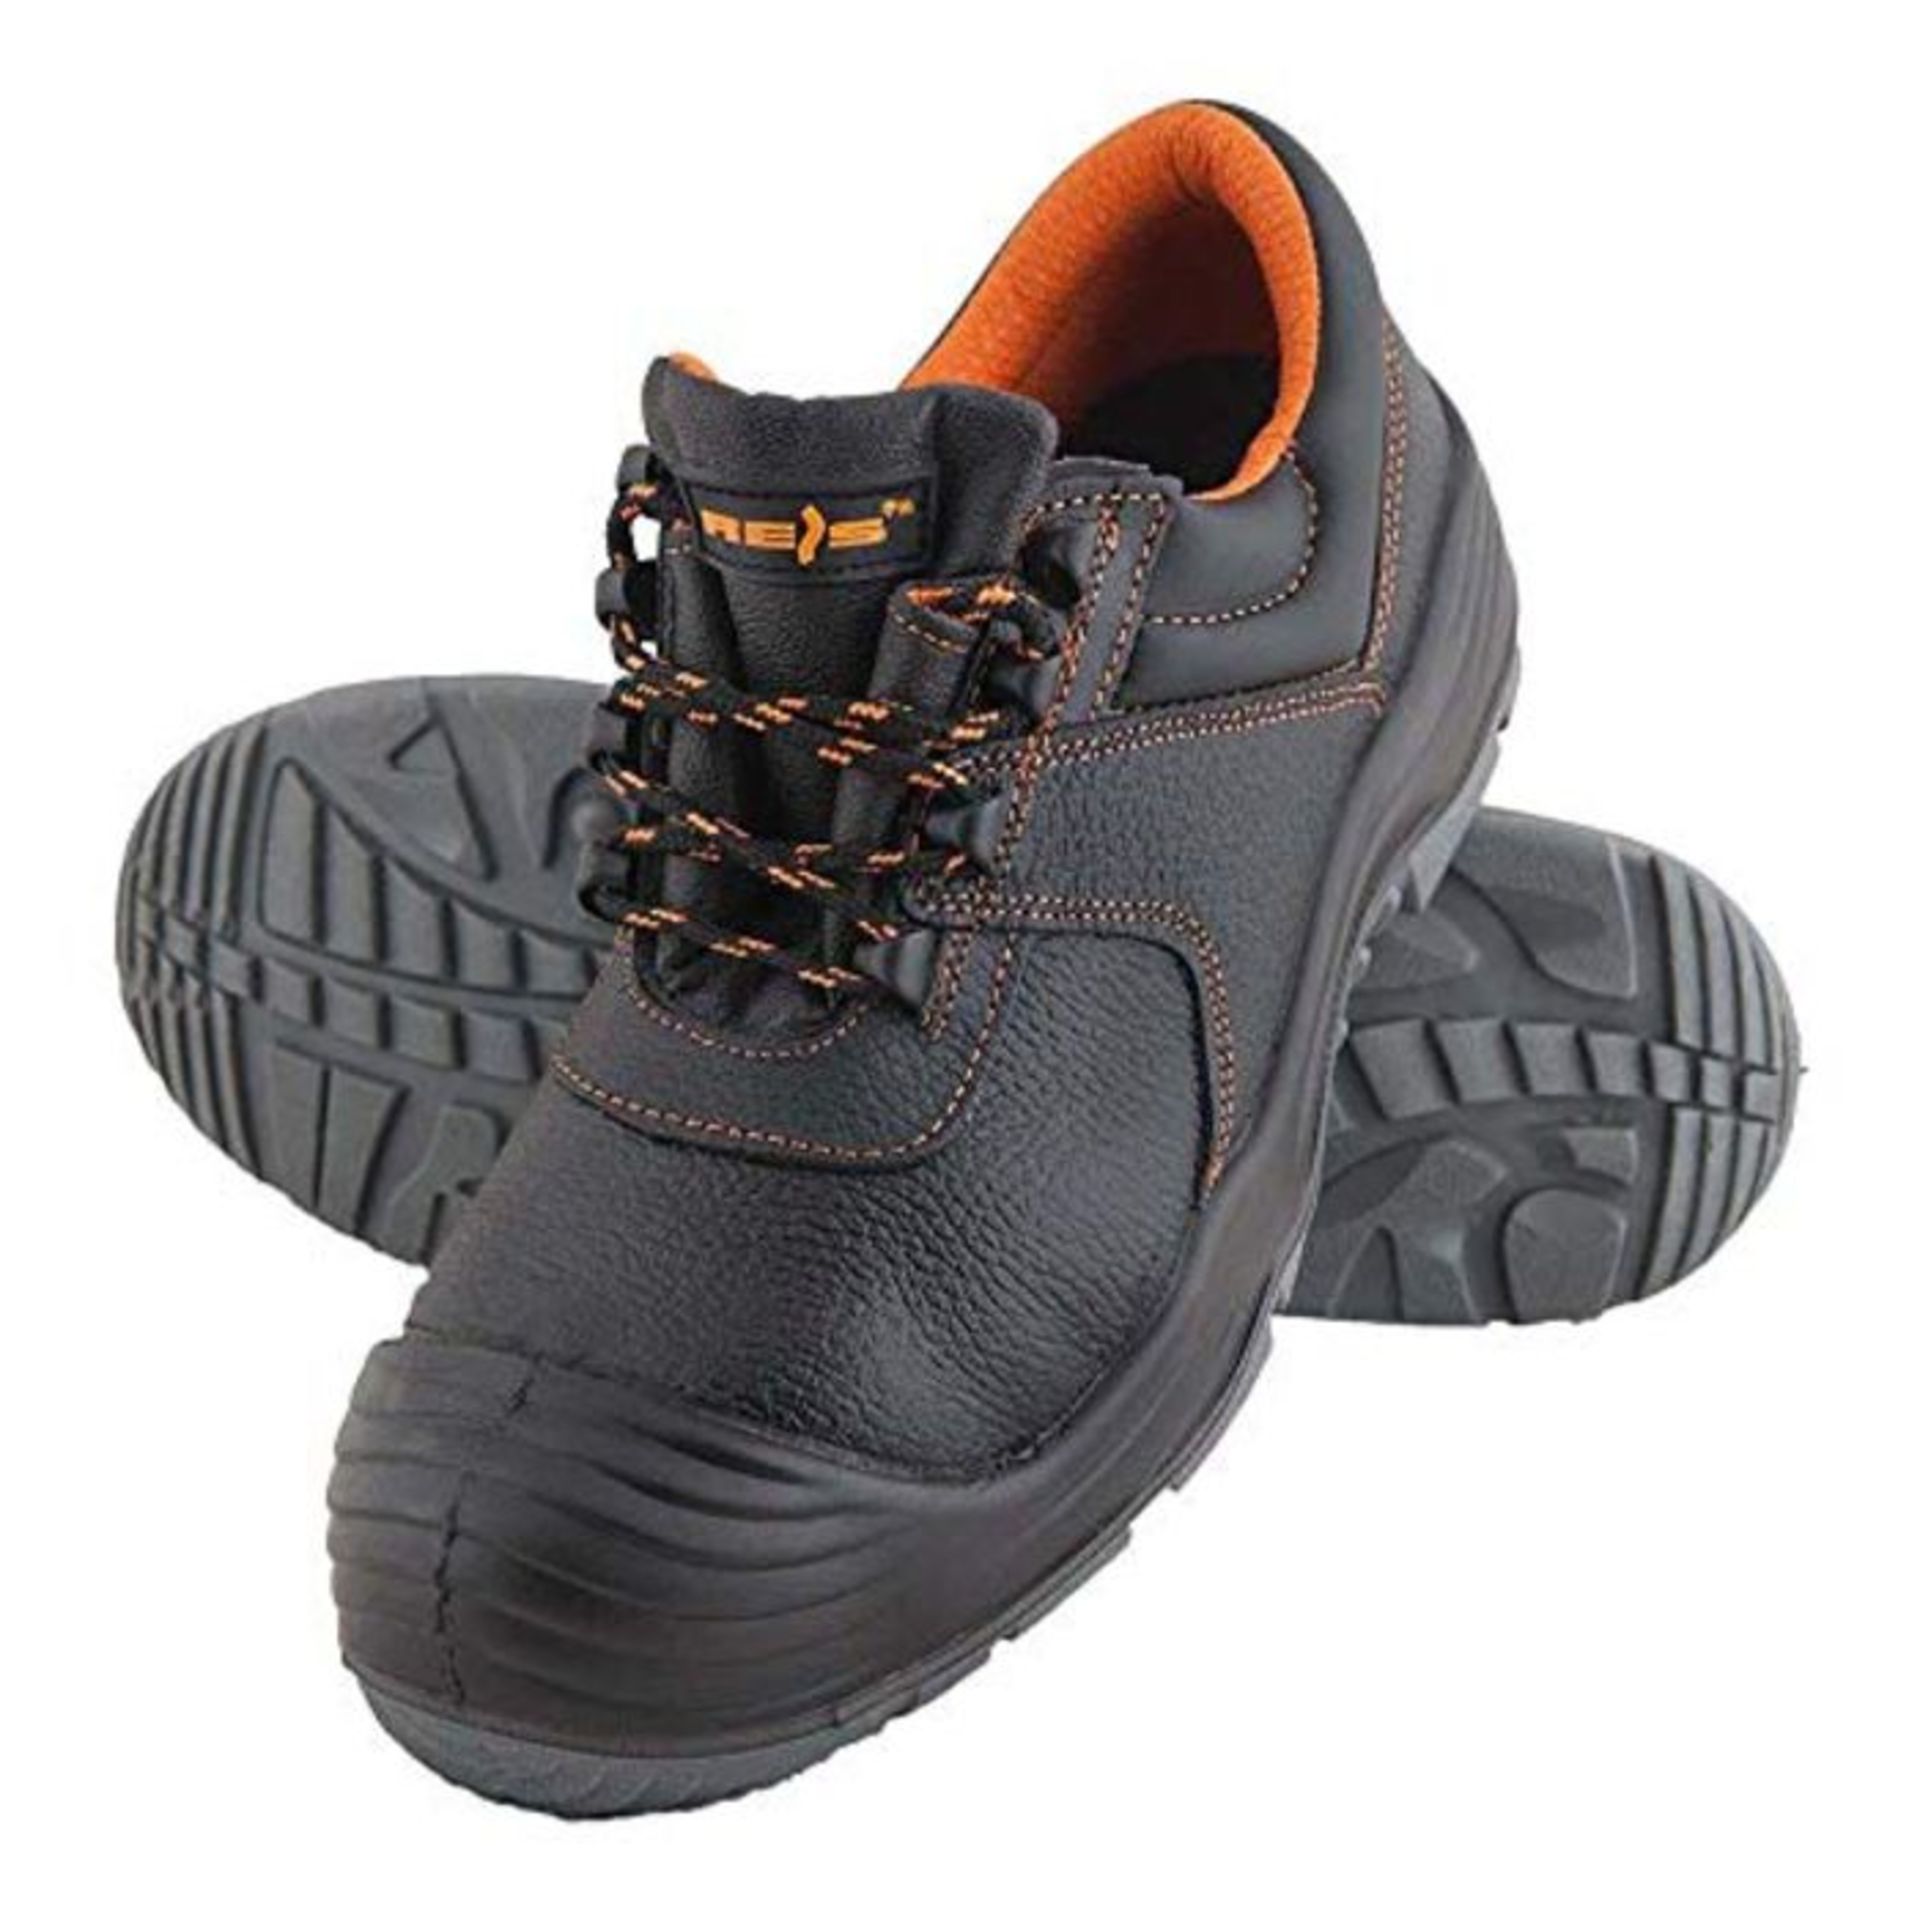 Reis BCS43 Composite Power Safety shoes, Black-Orange, 43 Size